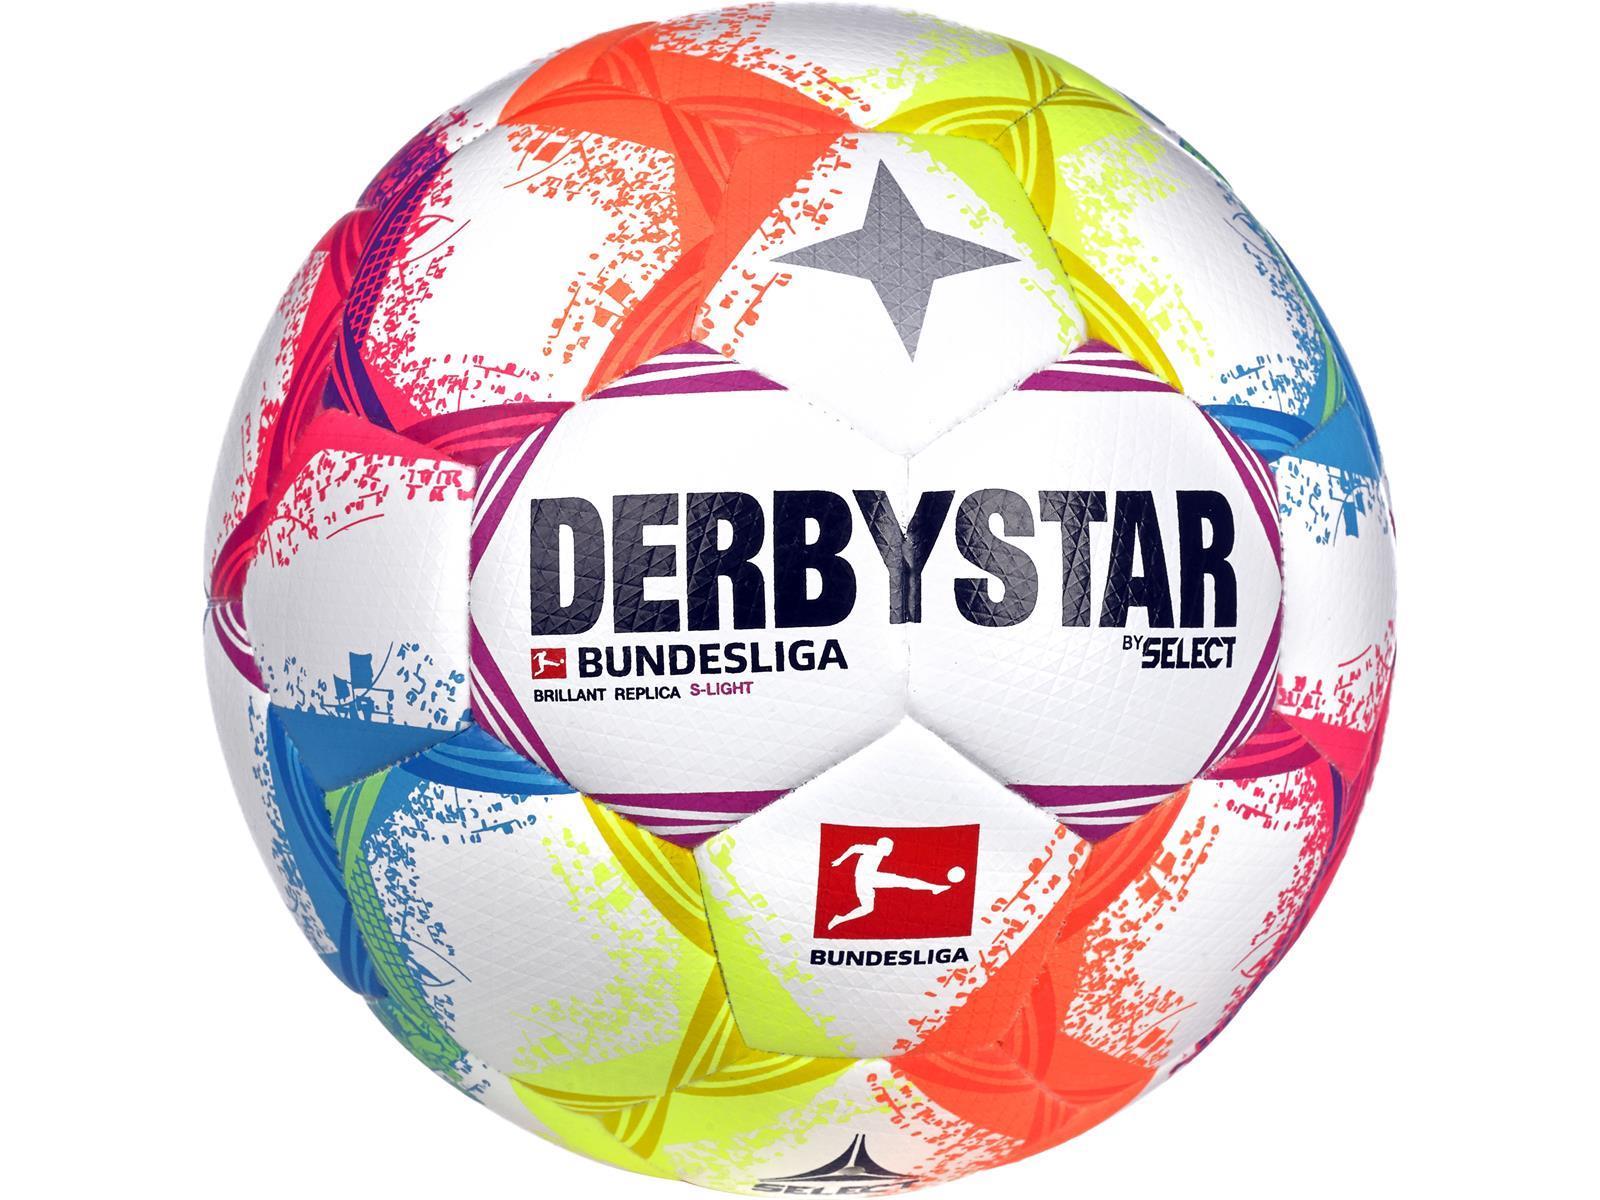 Derbystar Bundesliga Brillant Replica S-Light v22 Trainingsball Gr. 5